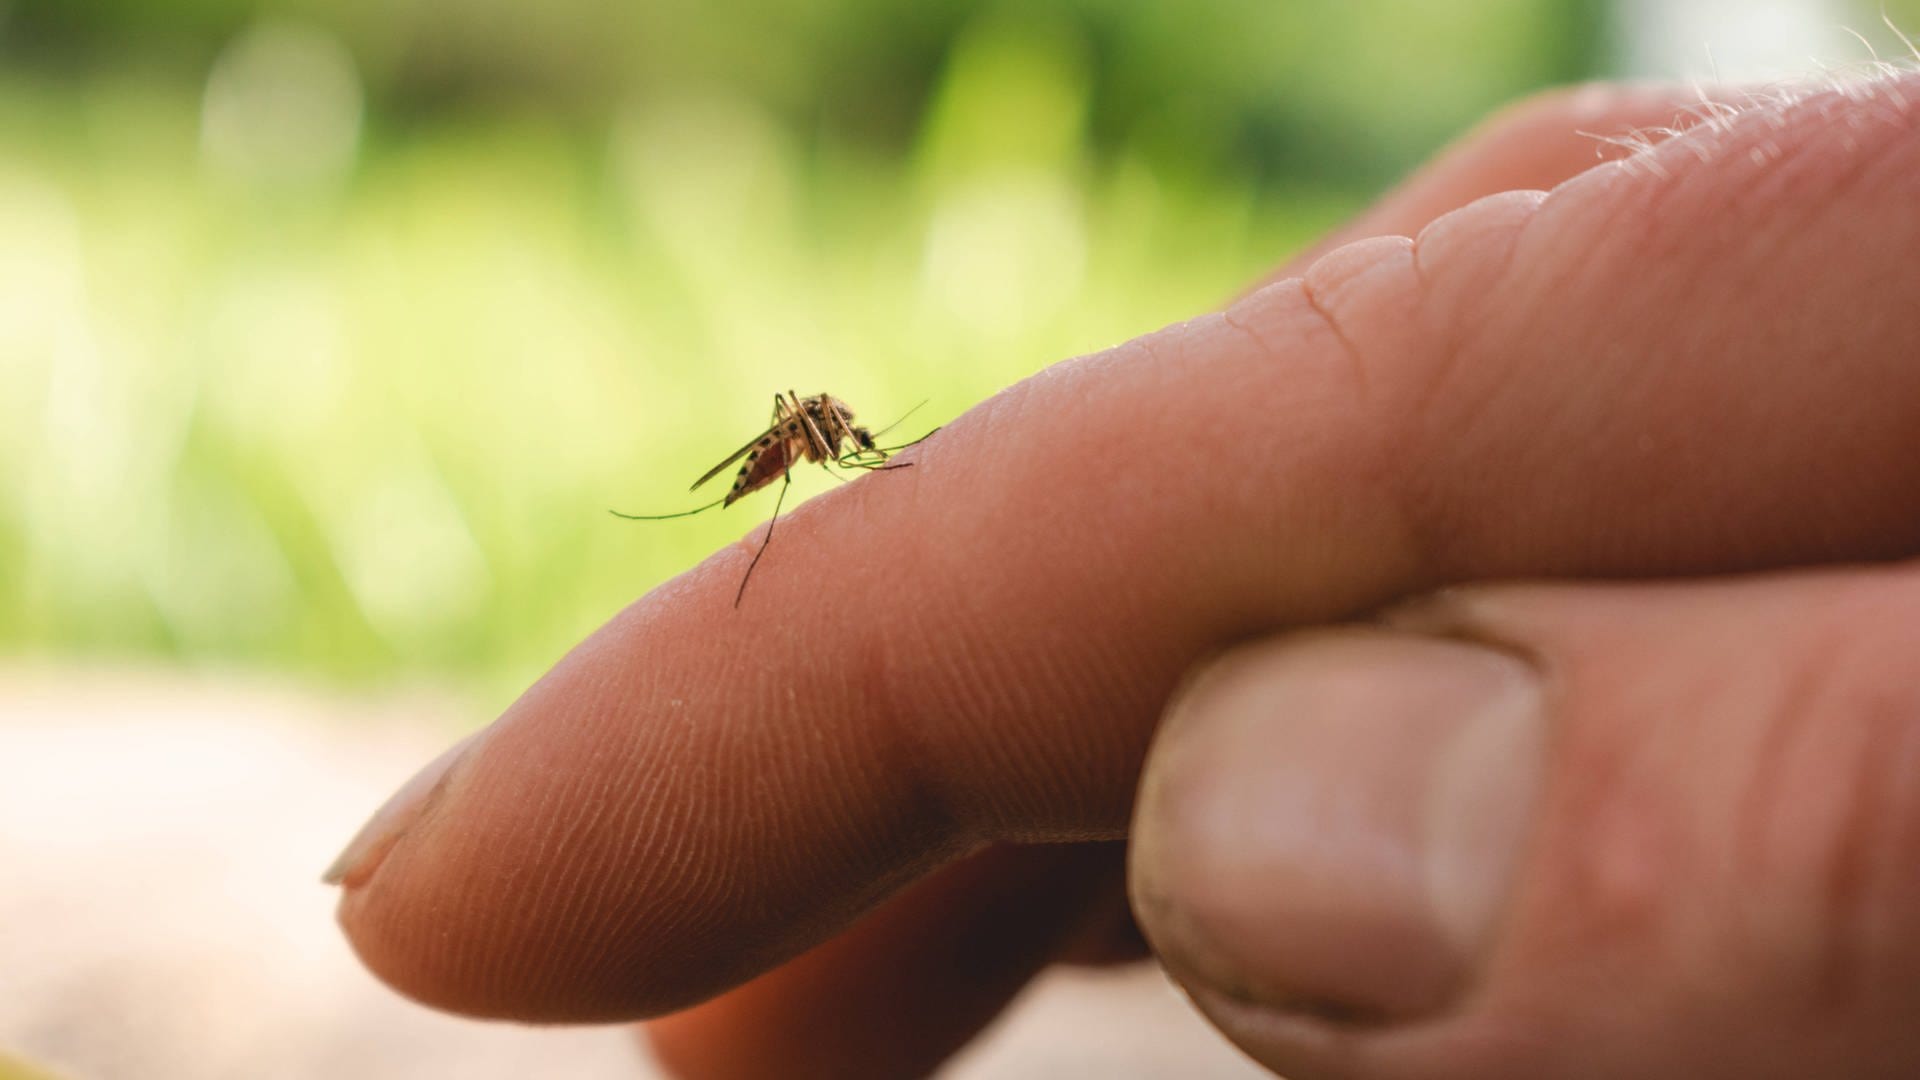 Malaria-Gebiete werden kleiner, aber mehr Menschen sind bedroht